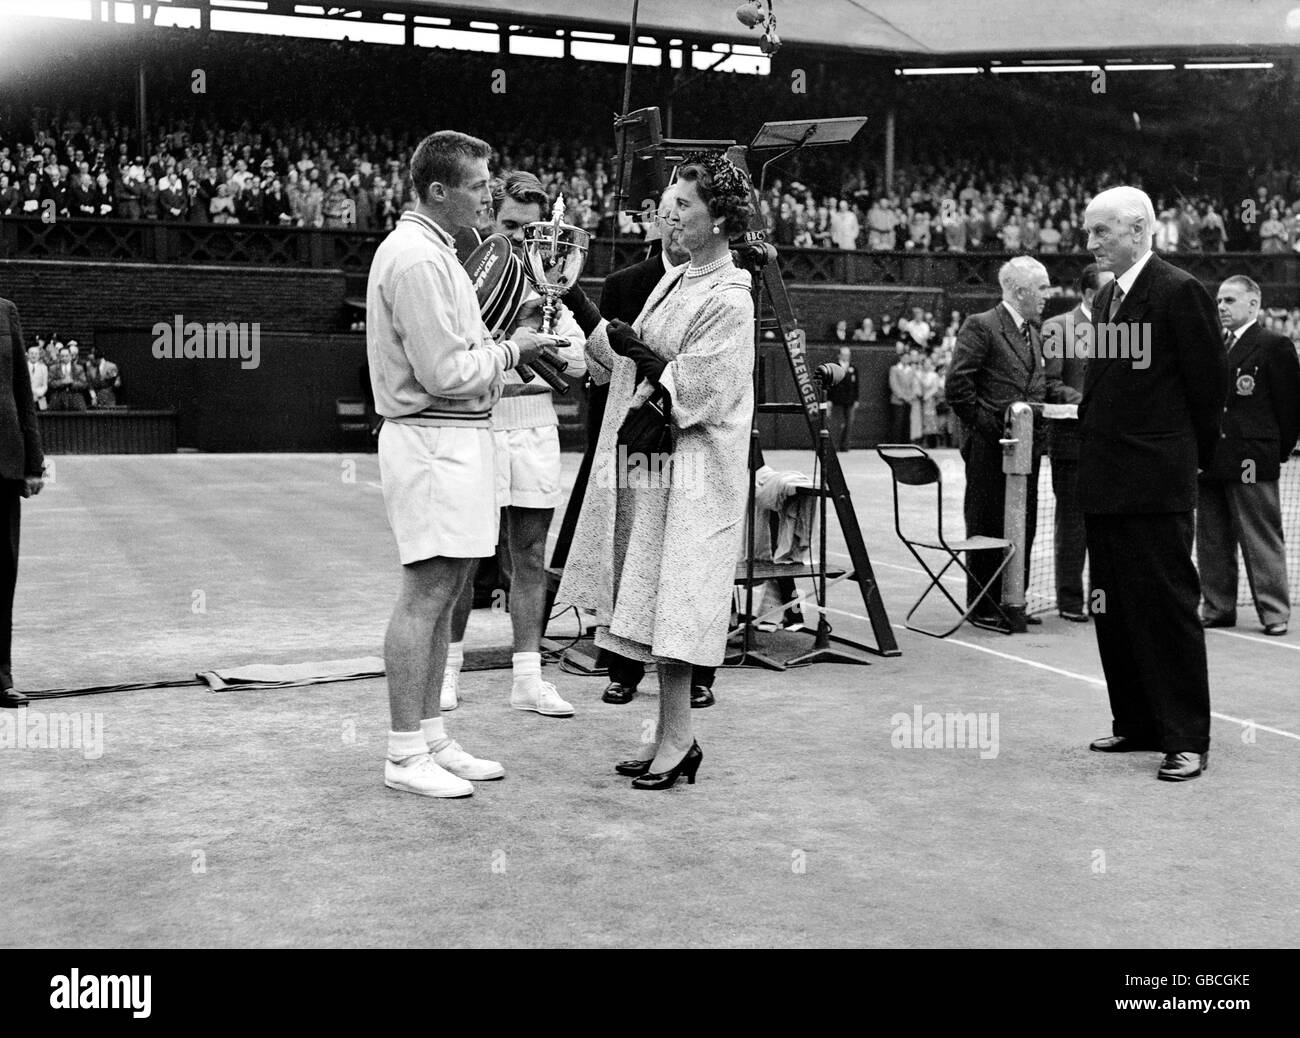 Tennis - Wimbledon - masculin - Final - Tony Trabert v Kurt Nielsen Banque D'Images